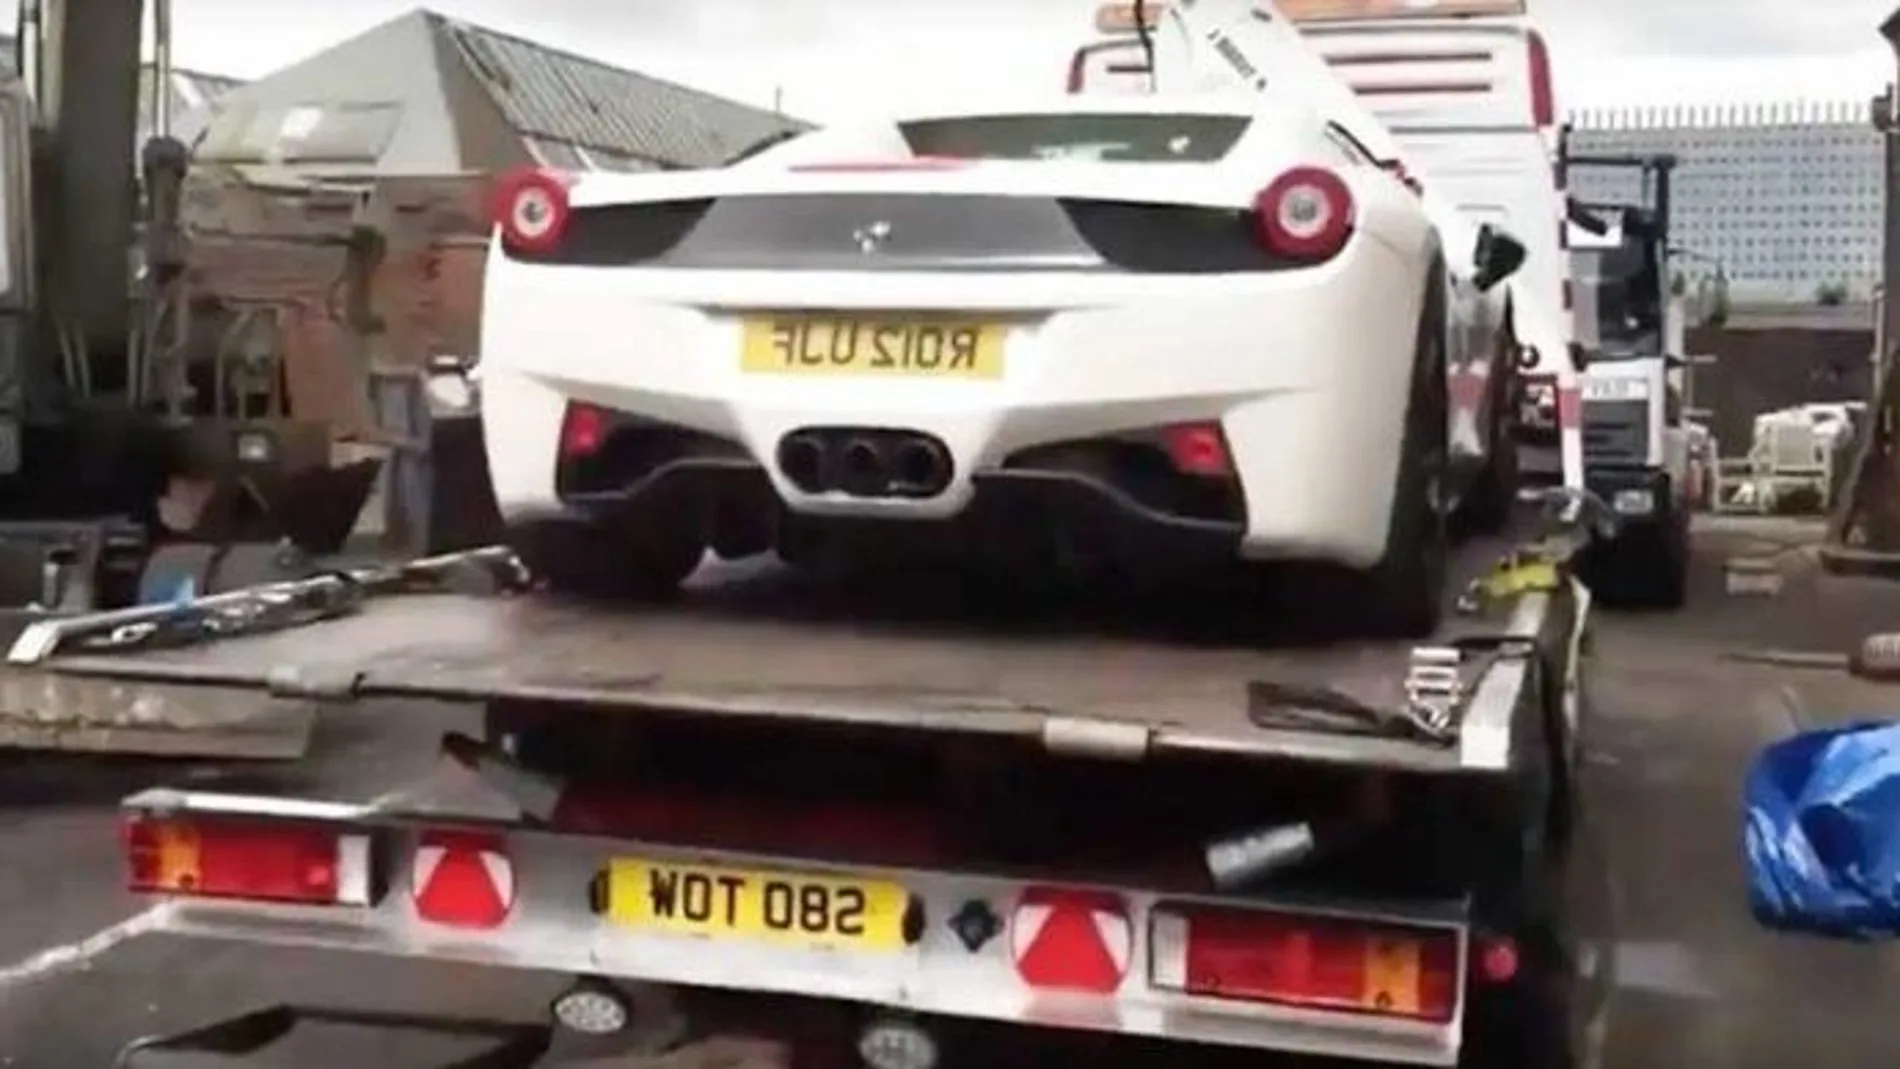 El propietario asegura que compró legalmente el Ferrari 458 Spider en una subasta, presentando incluso los recibos a la Policía